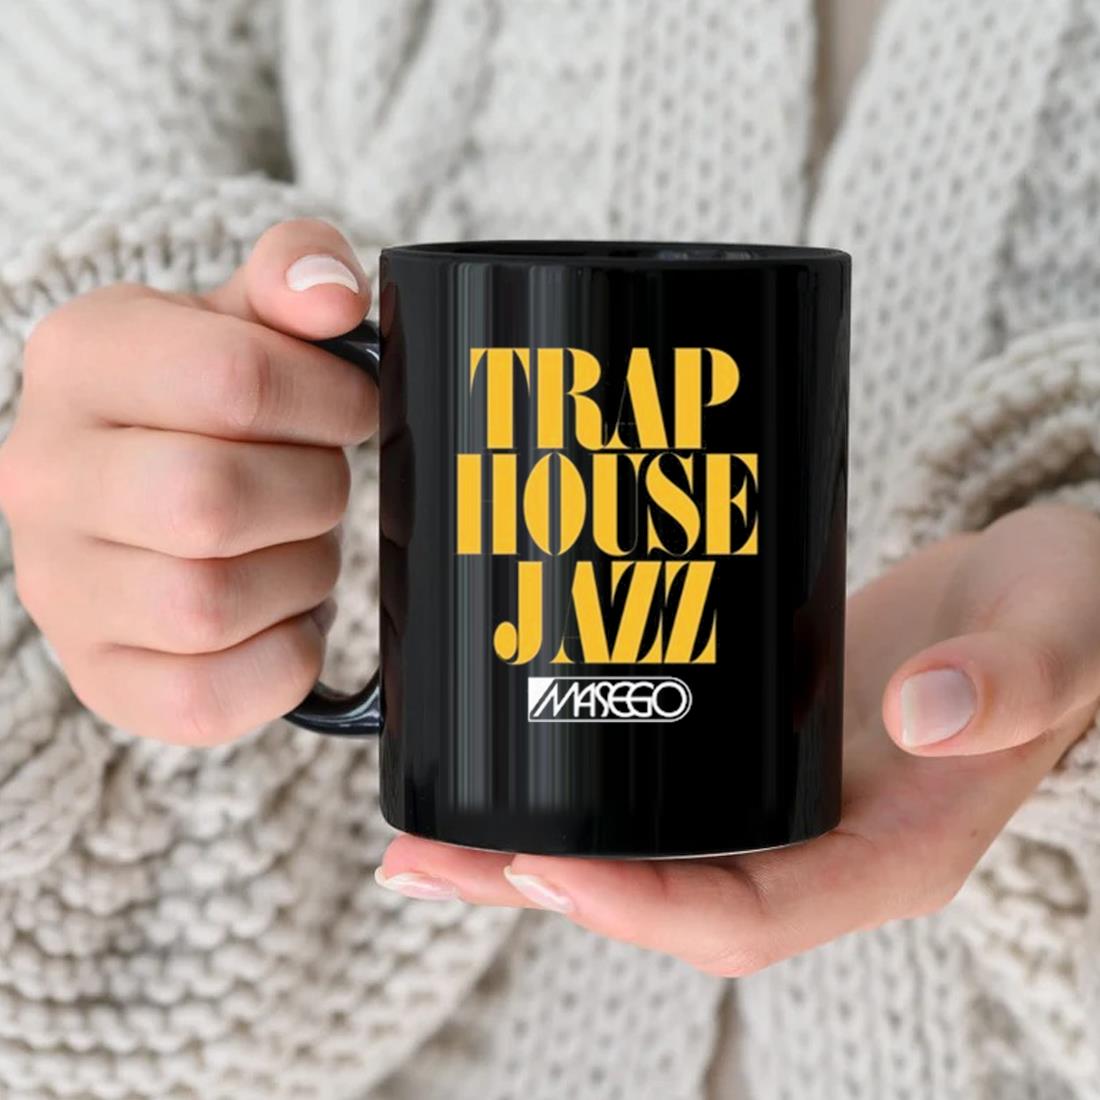 Masego Trap House Jazz Mug nhu